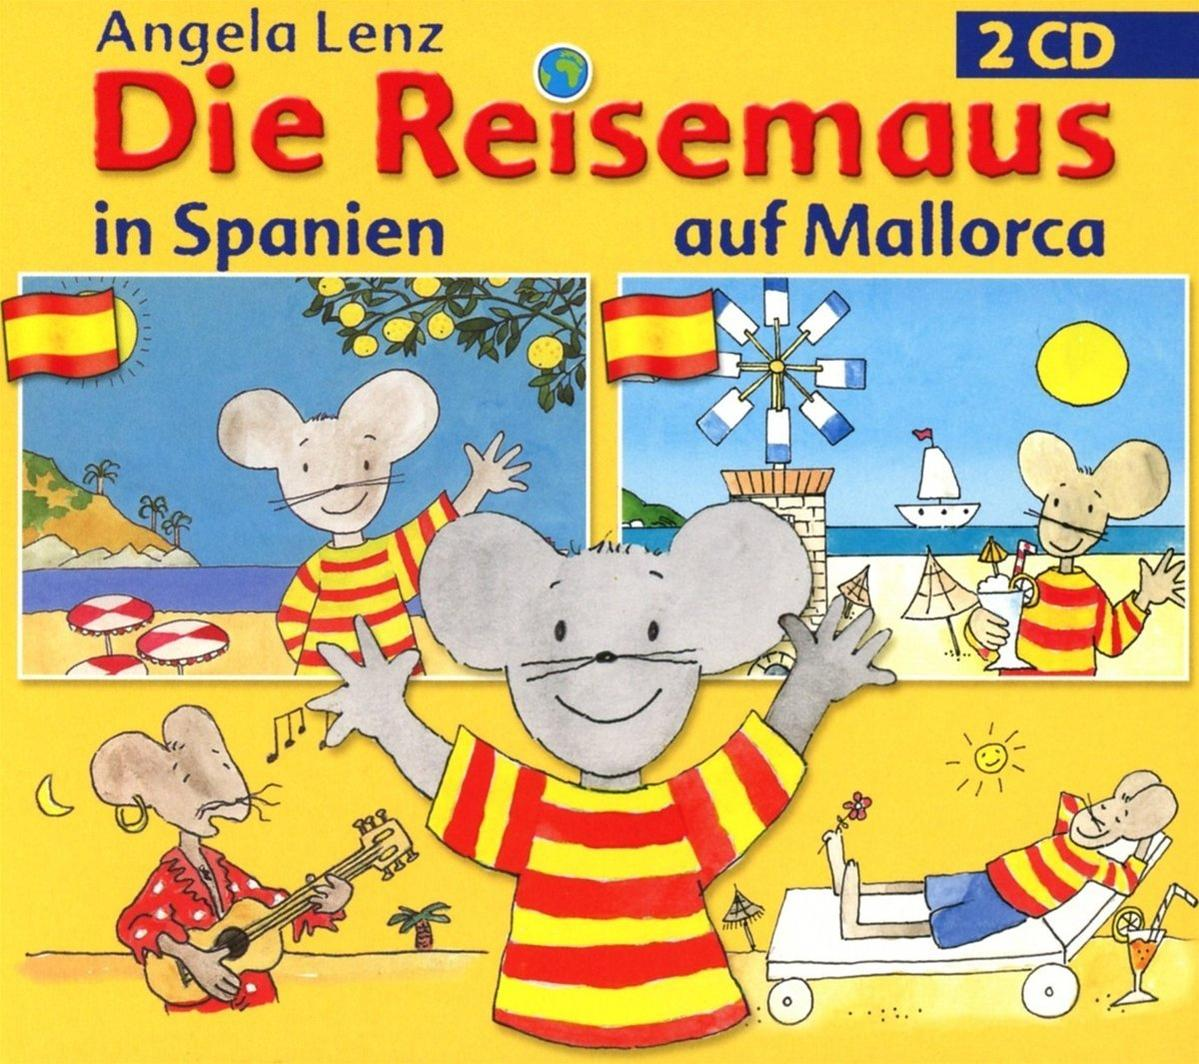 Angela Lenz - Die - Spanien Reisemaus auf und Mallorca (CD) in